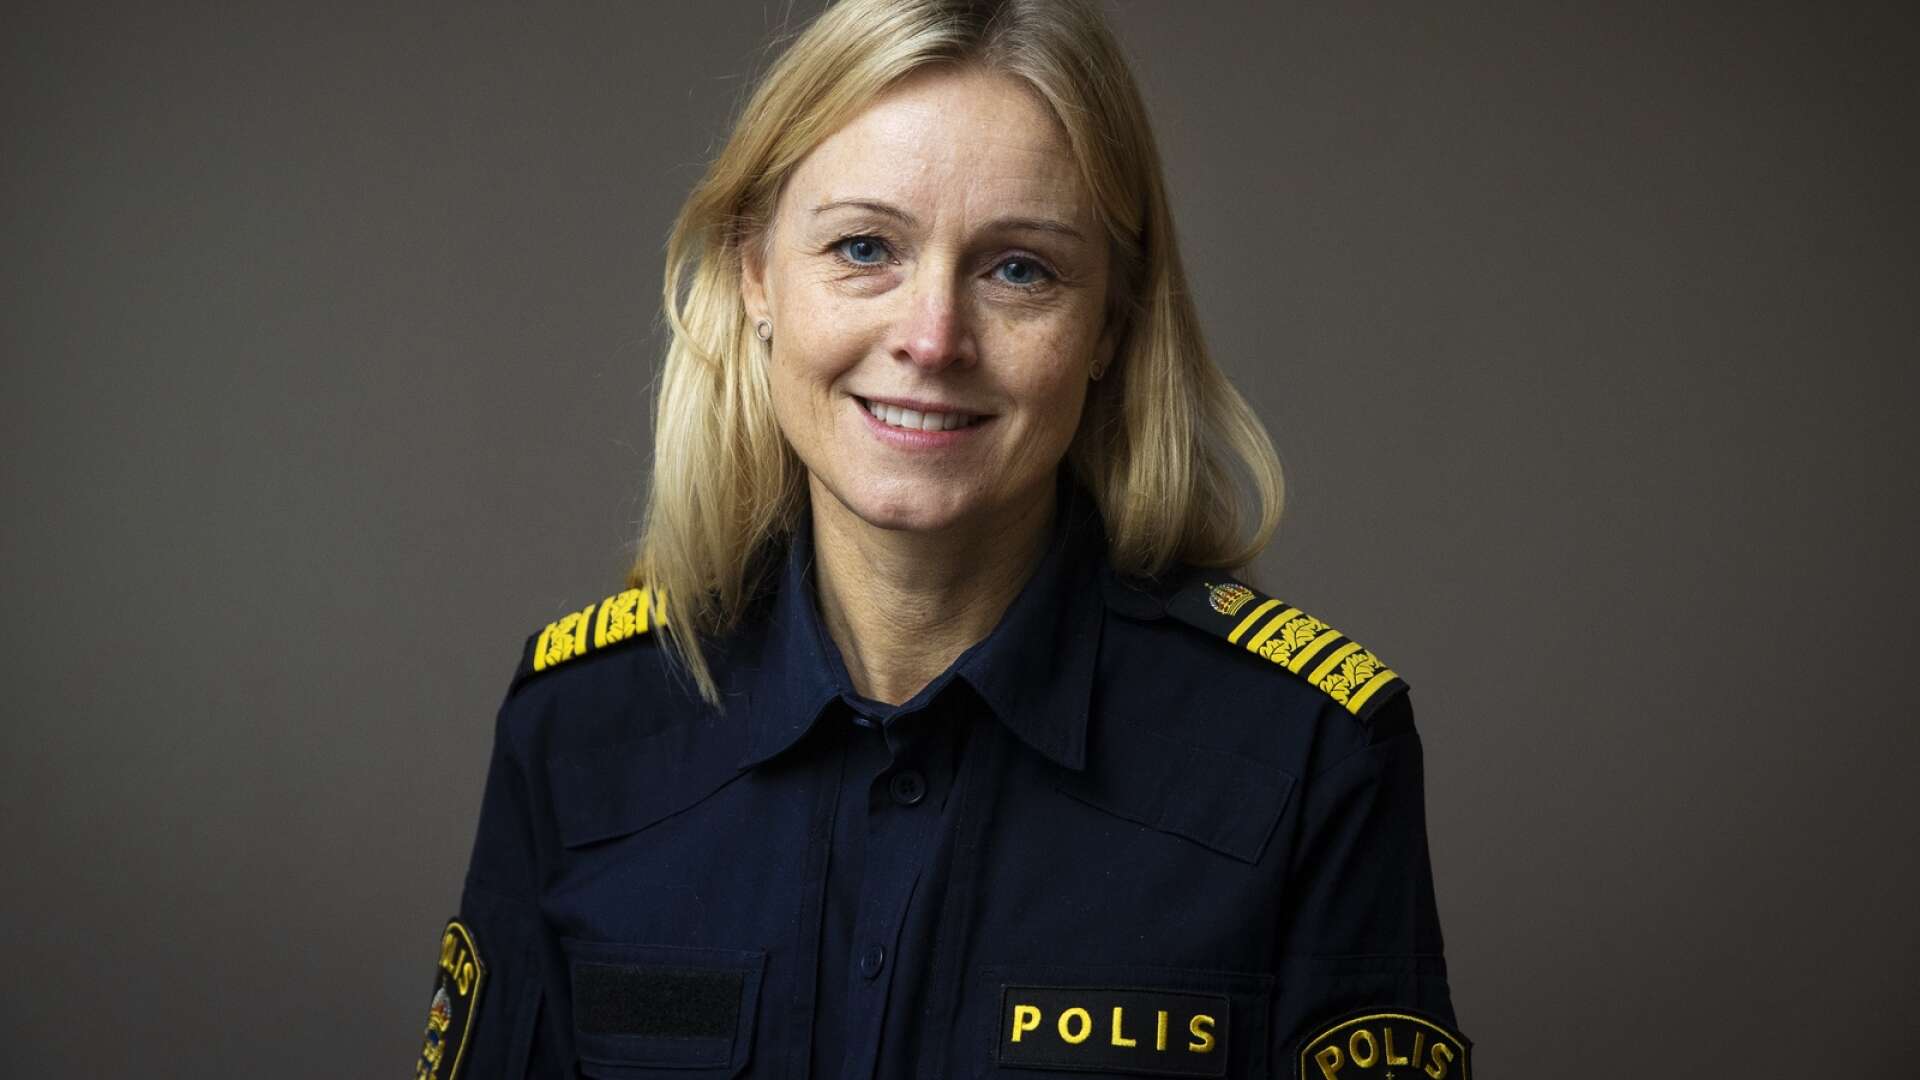 Utbildad psykolog • Har patrullerat i Stockholm • Basar över 500 poliser